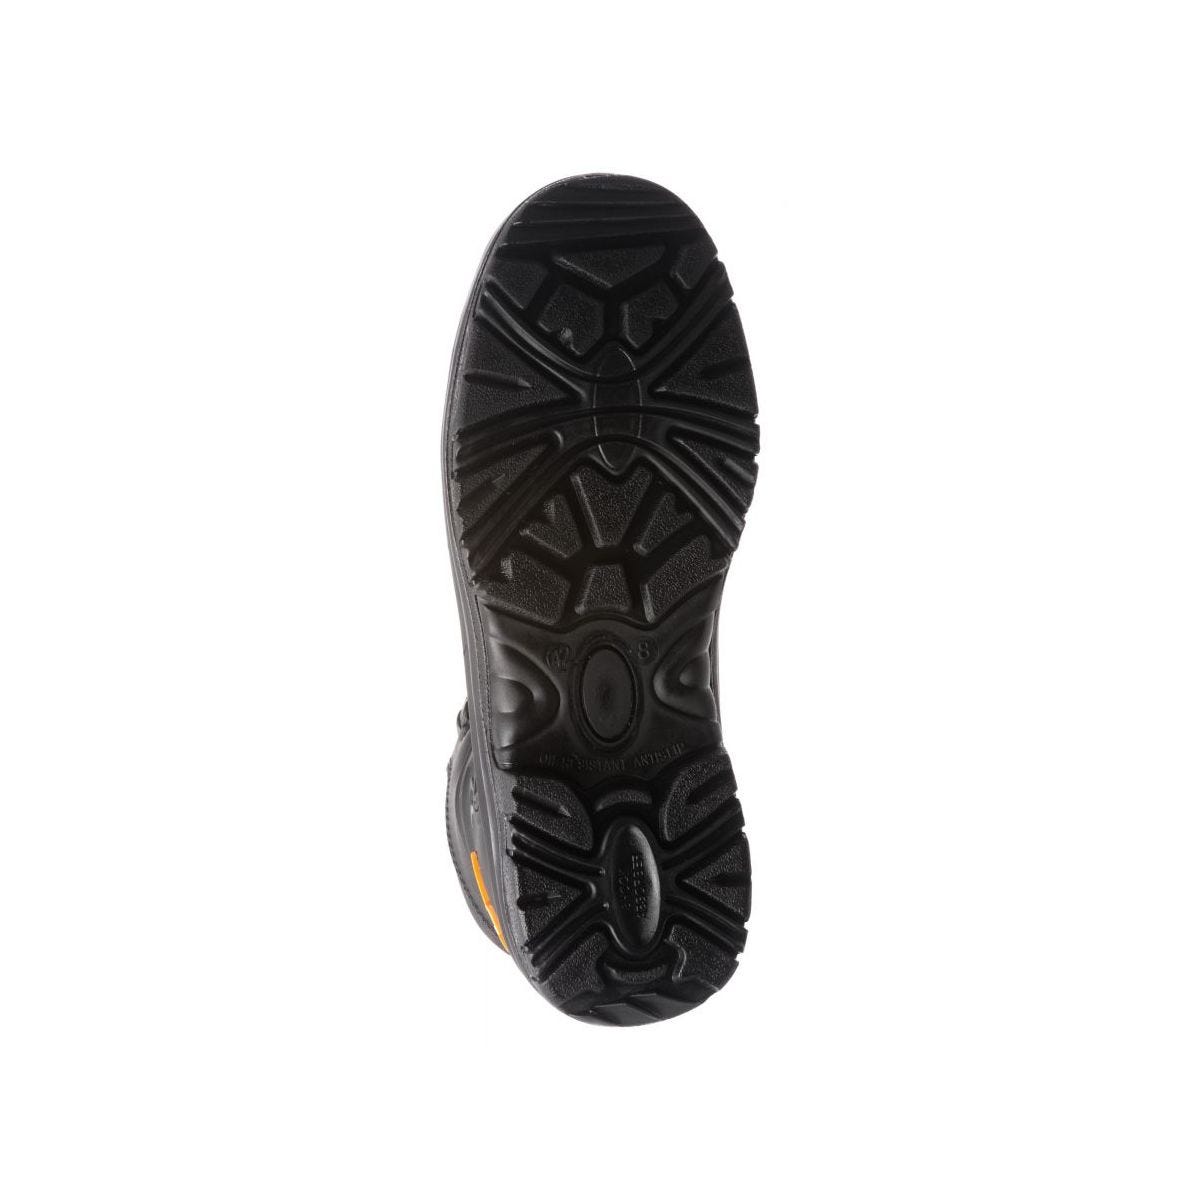 Chaussures de sécurité hautes S3 SRC OPAL composite Noir - Coverguard - Taille 41 4